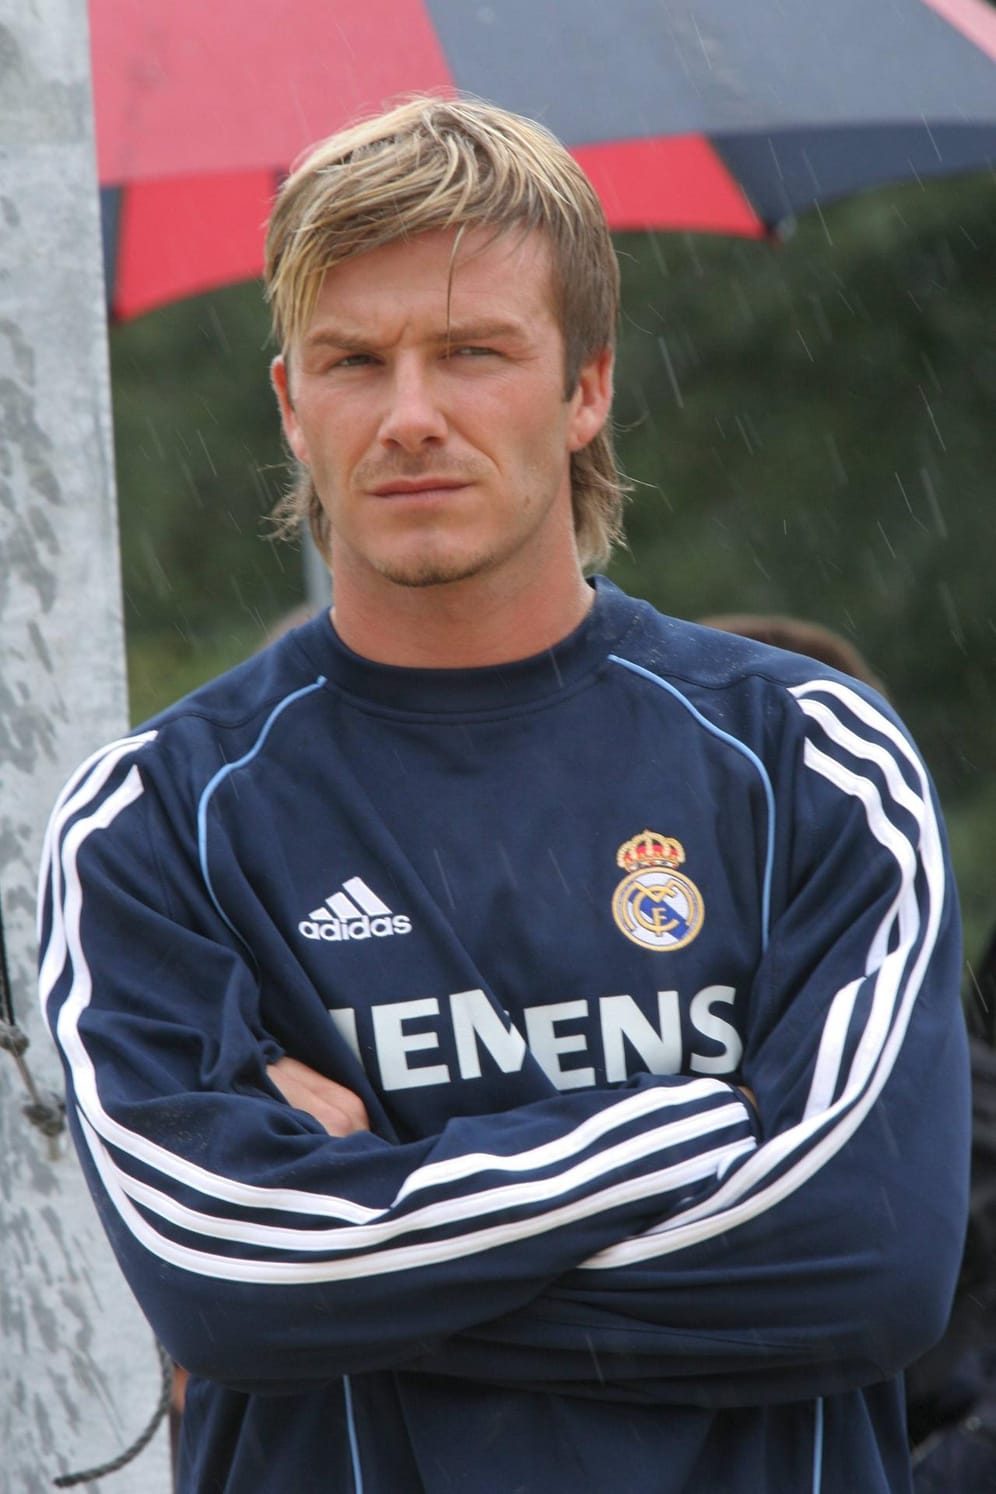 Neue Frisur beim neuen Job: Beim Training für Real Madrid präsentierte David Beckham seinen gefärbten Vokuhila in blond.